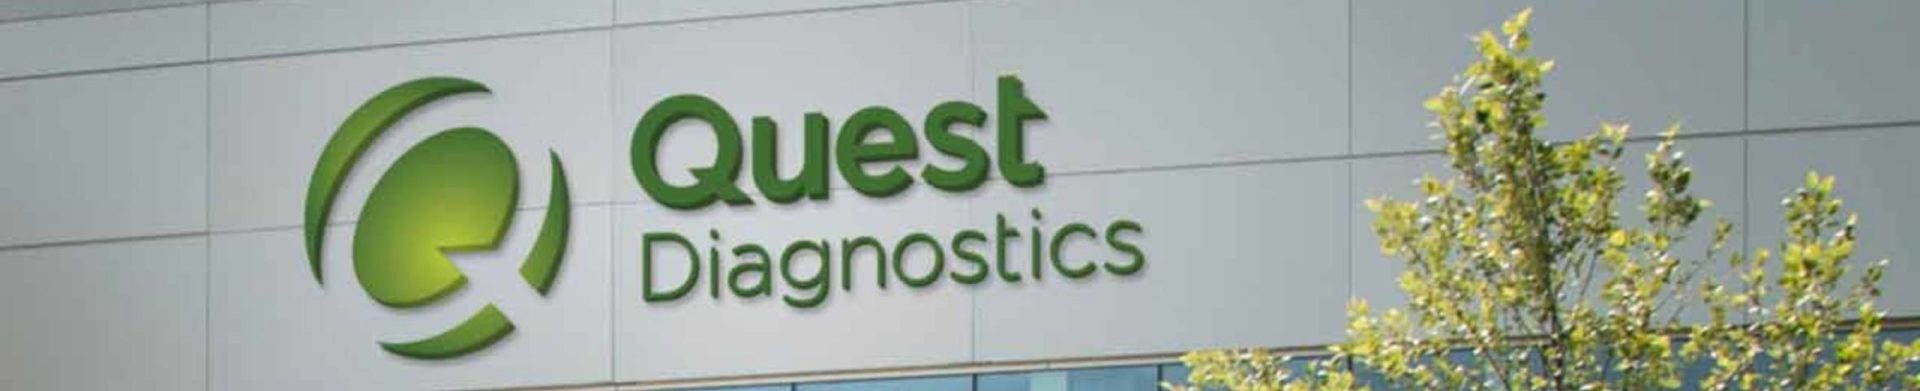 the Quest Diagnostics building